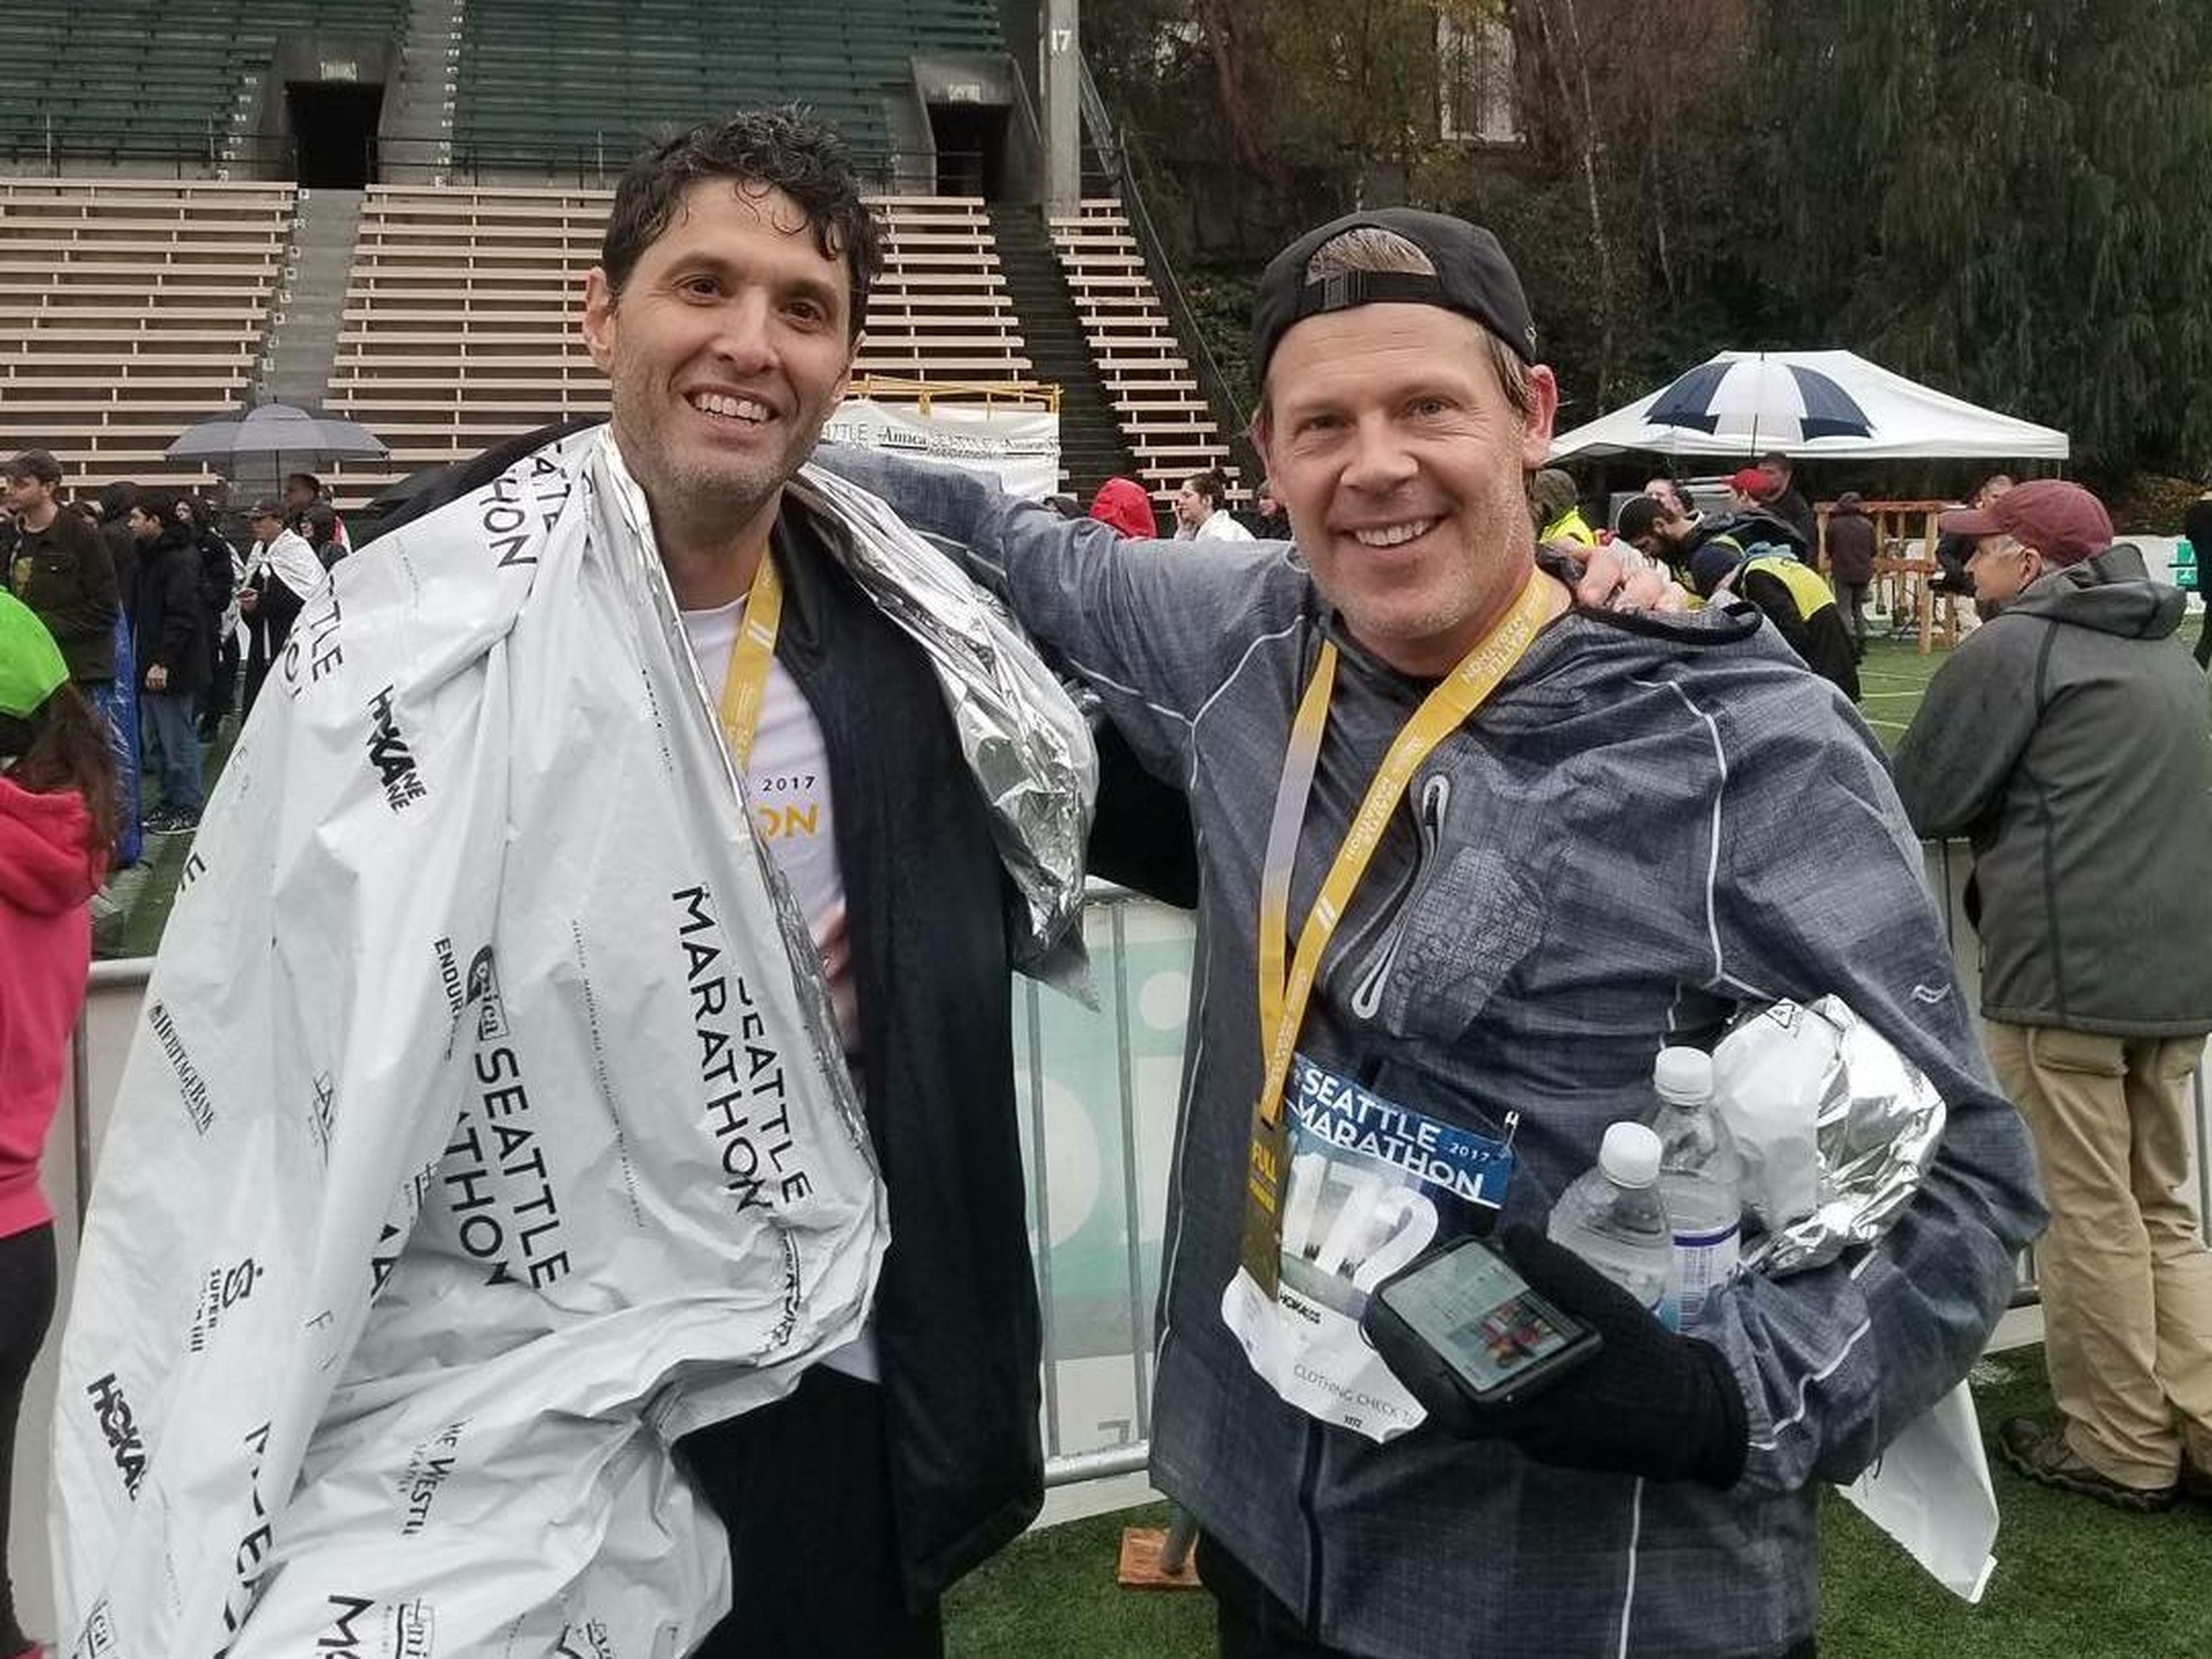 Terry Myerson (izquierda) y Nick Parker (derecha) después de completar la Maratón de Seattle 2017 juntos en un desafío.